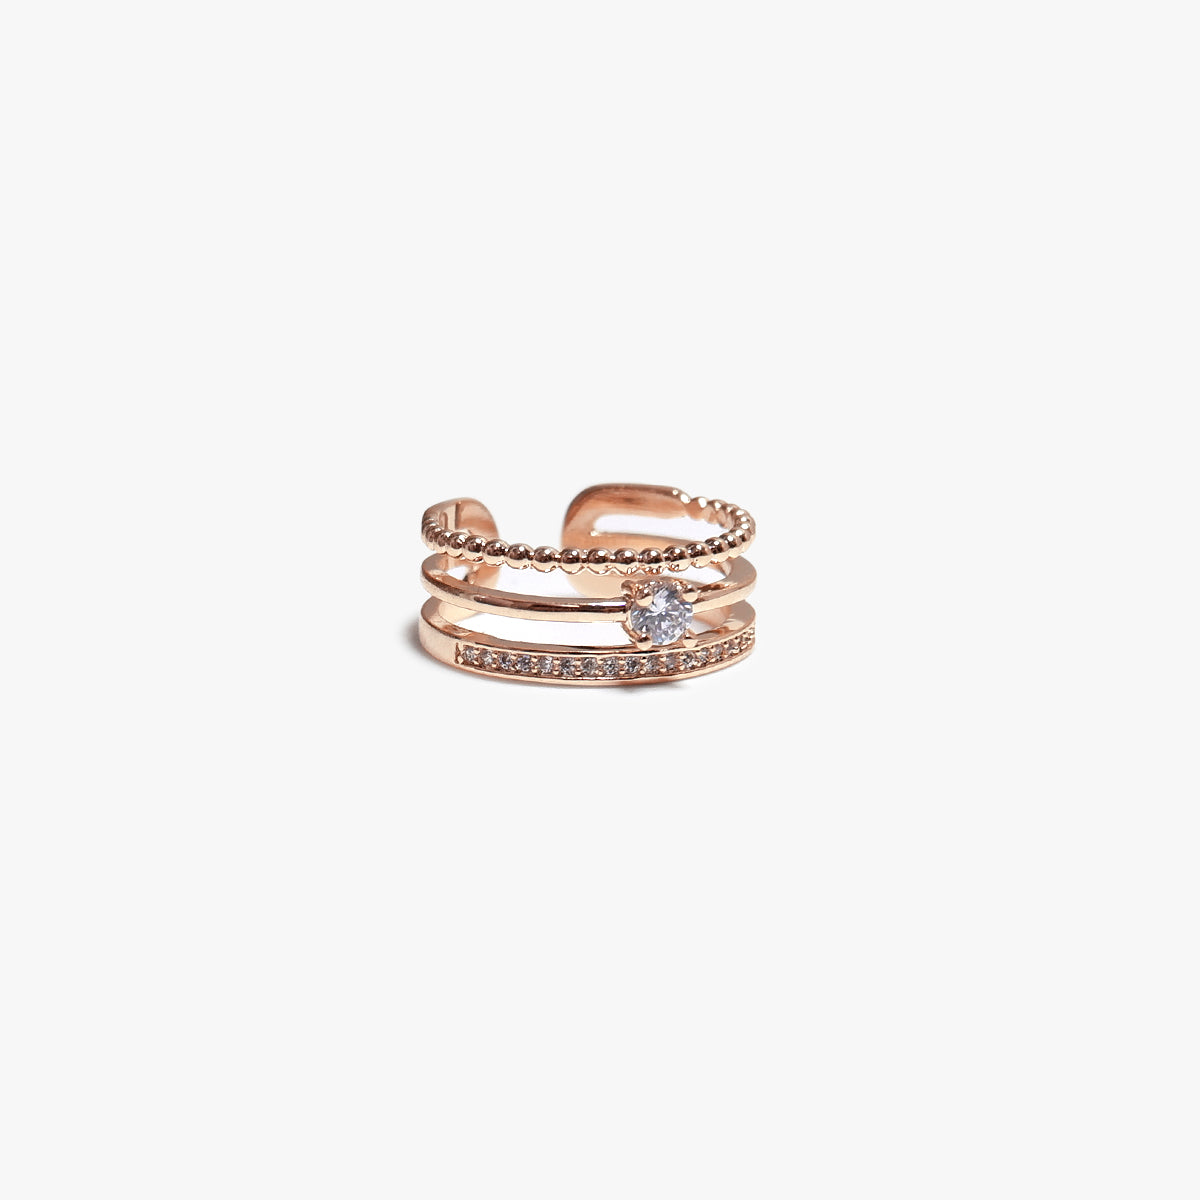 The Any-size Zara Ring